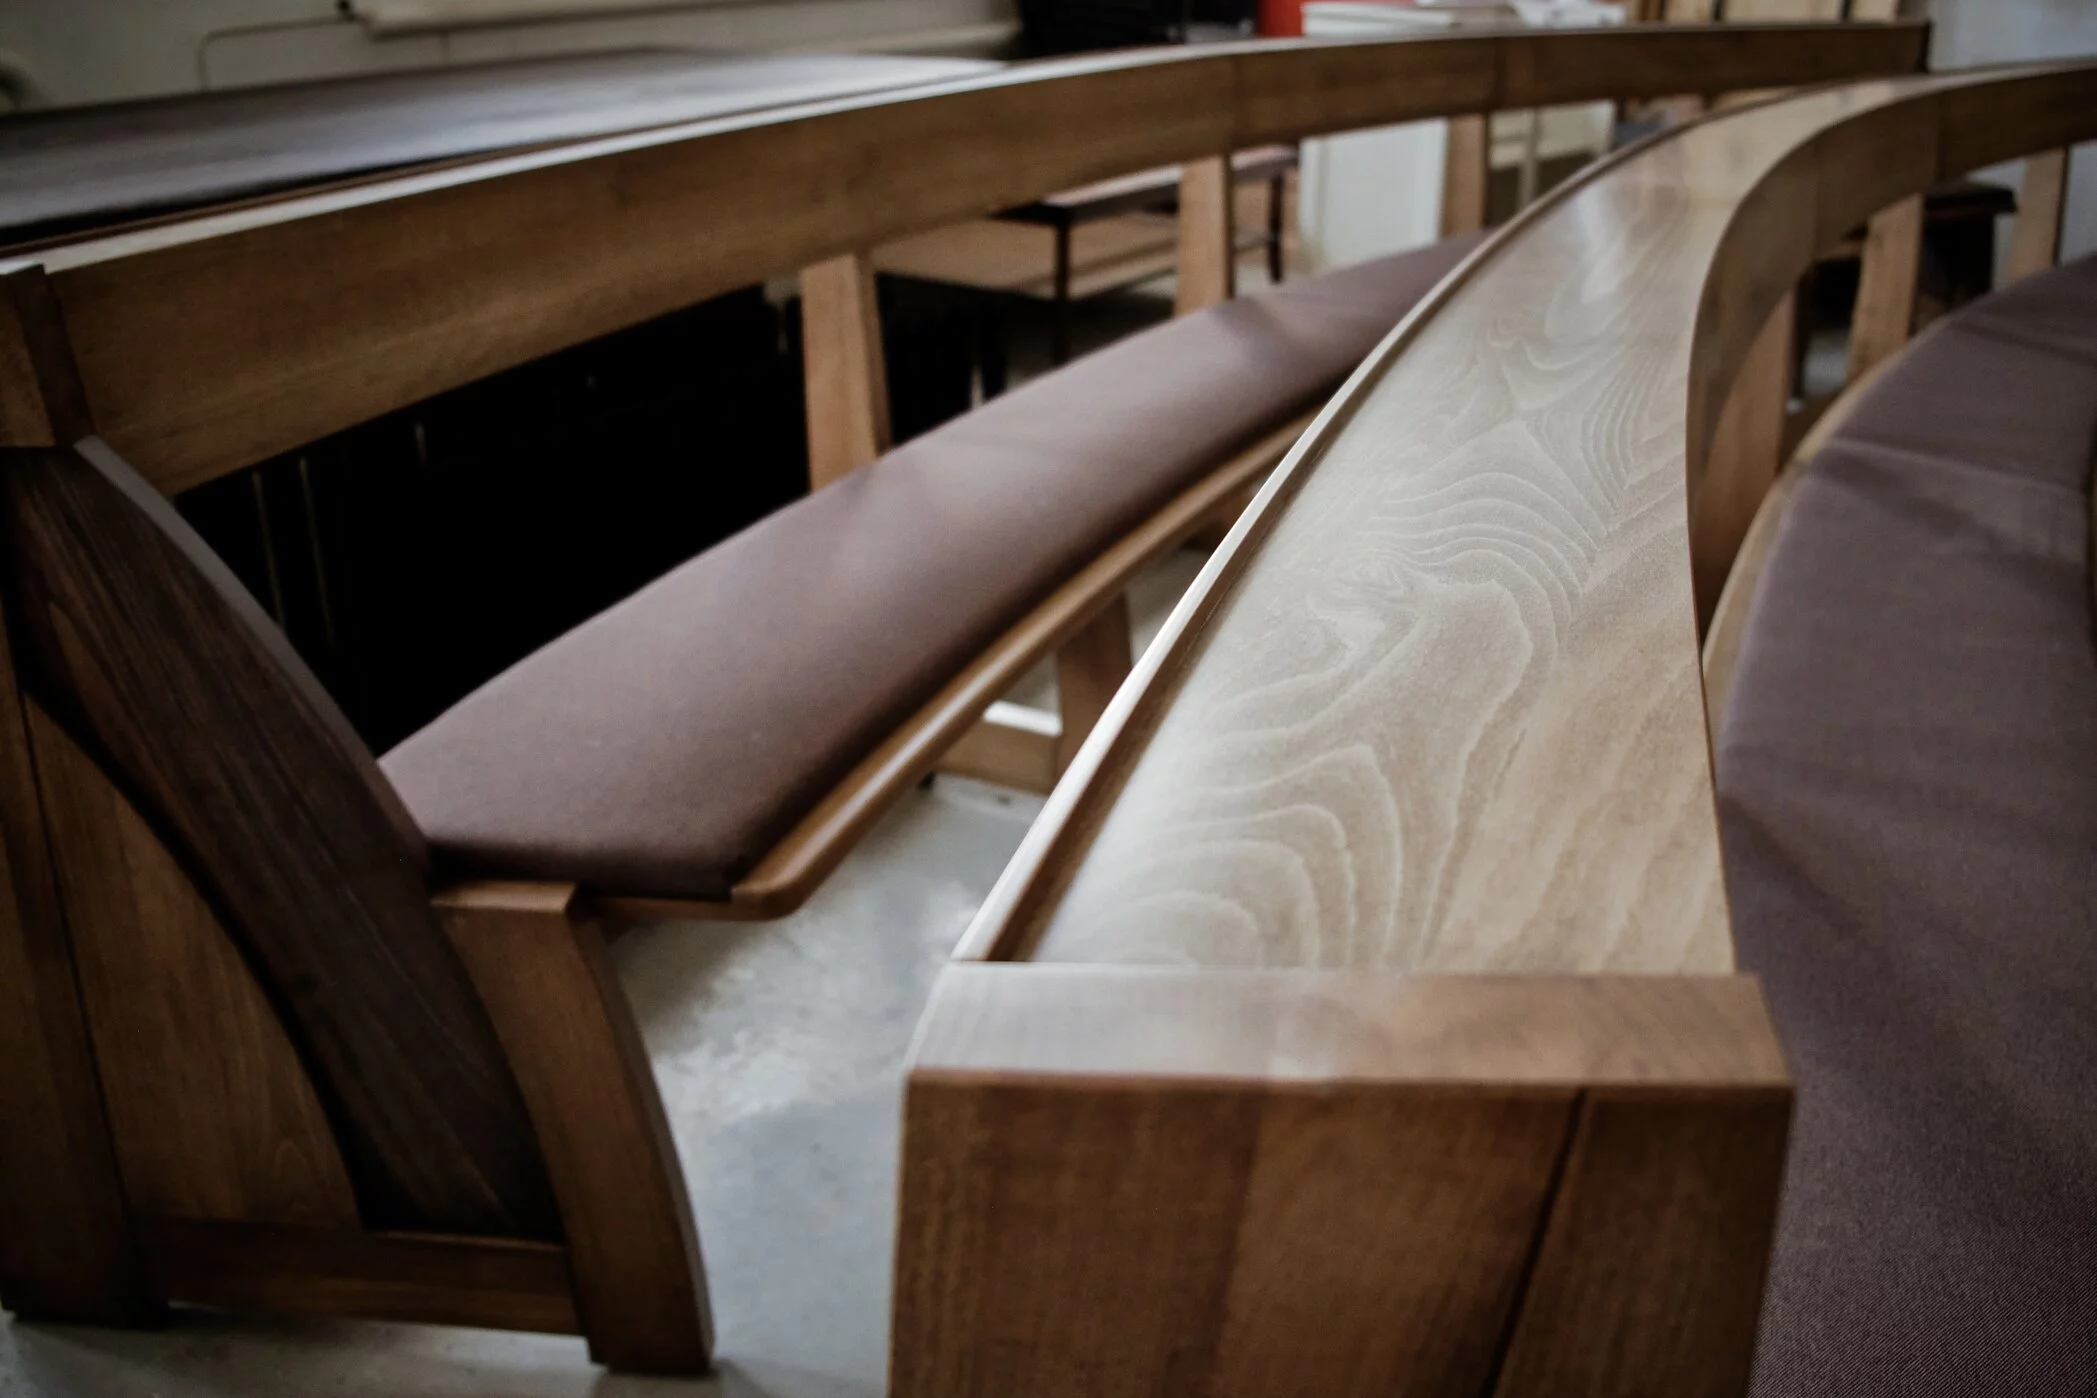 Minimalistický dizajn kostolnej lavice Zoe sa spája s funkčnosťou a kvalitou. Pohľad dokončenej lavice s podsedákom 